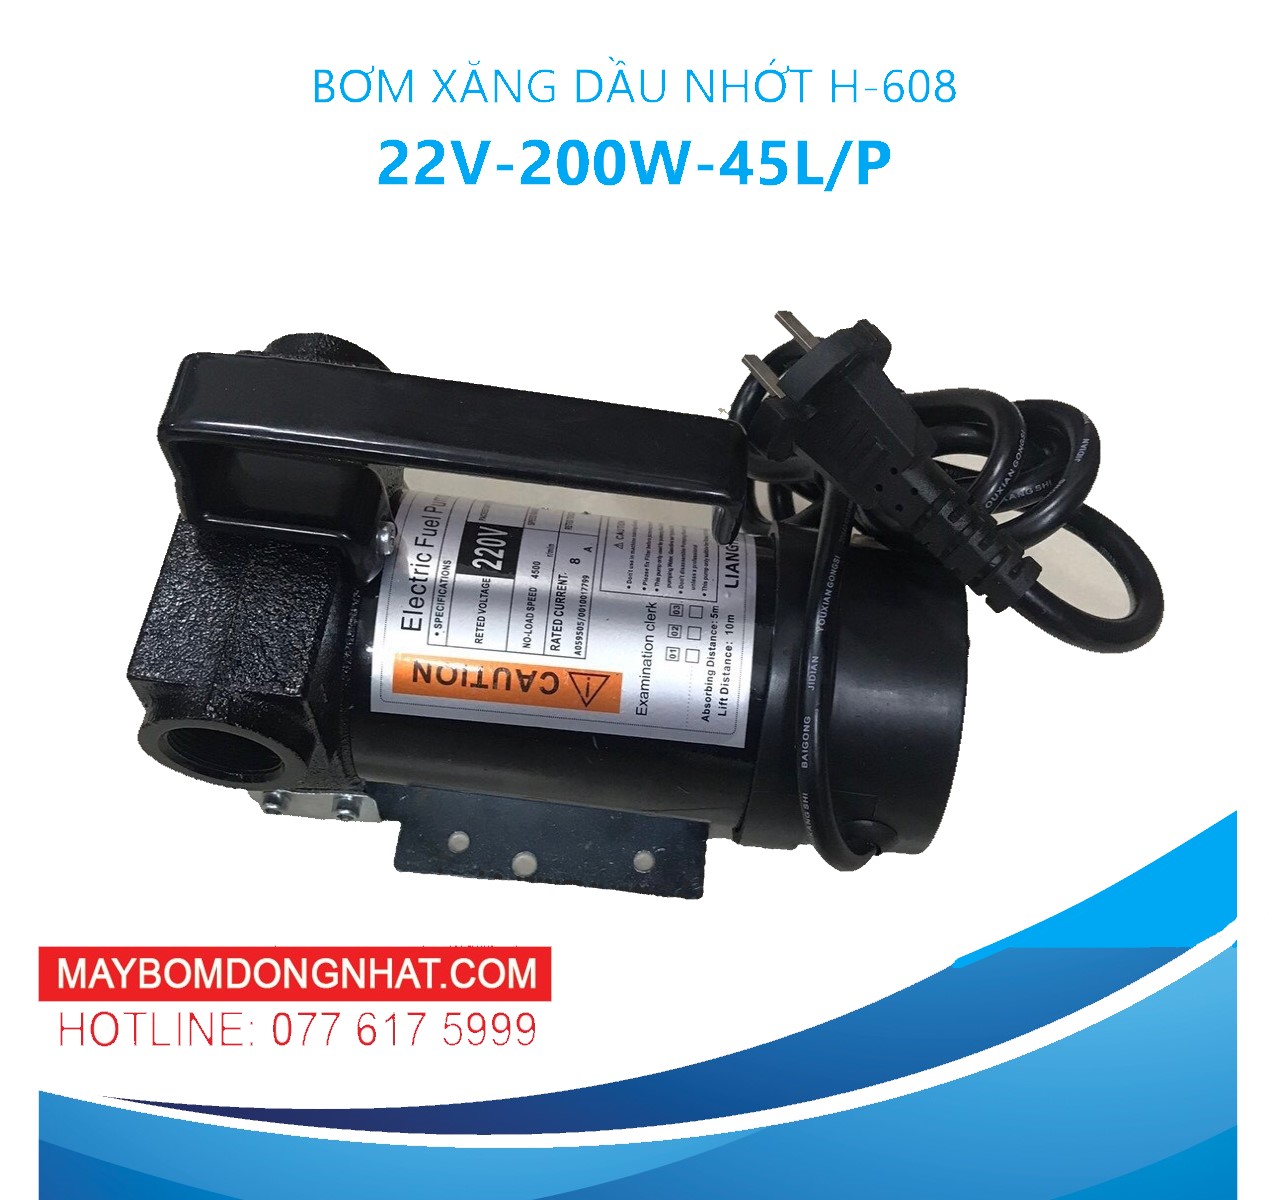 Máy bơm xăng dầu nhớt 220V-200W-45L/P